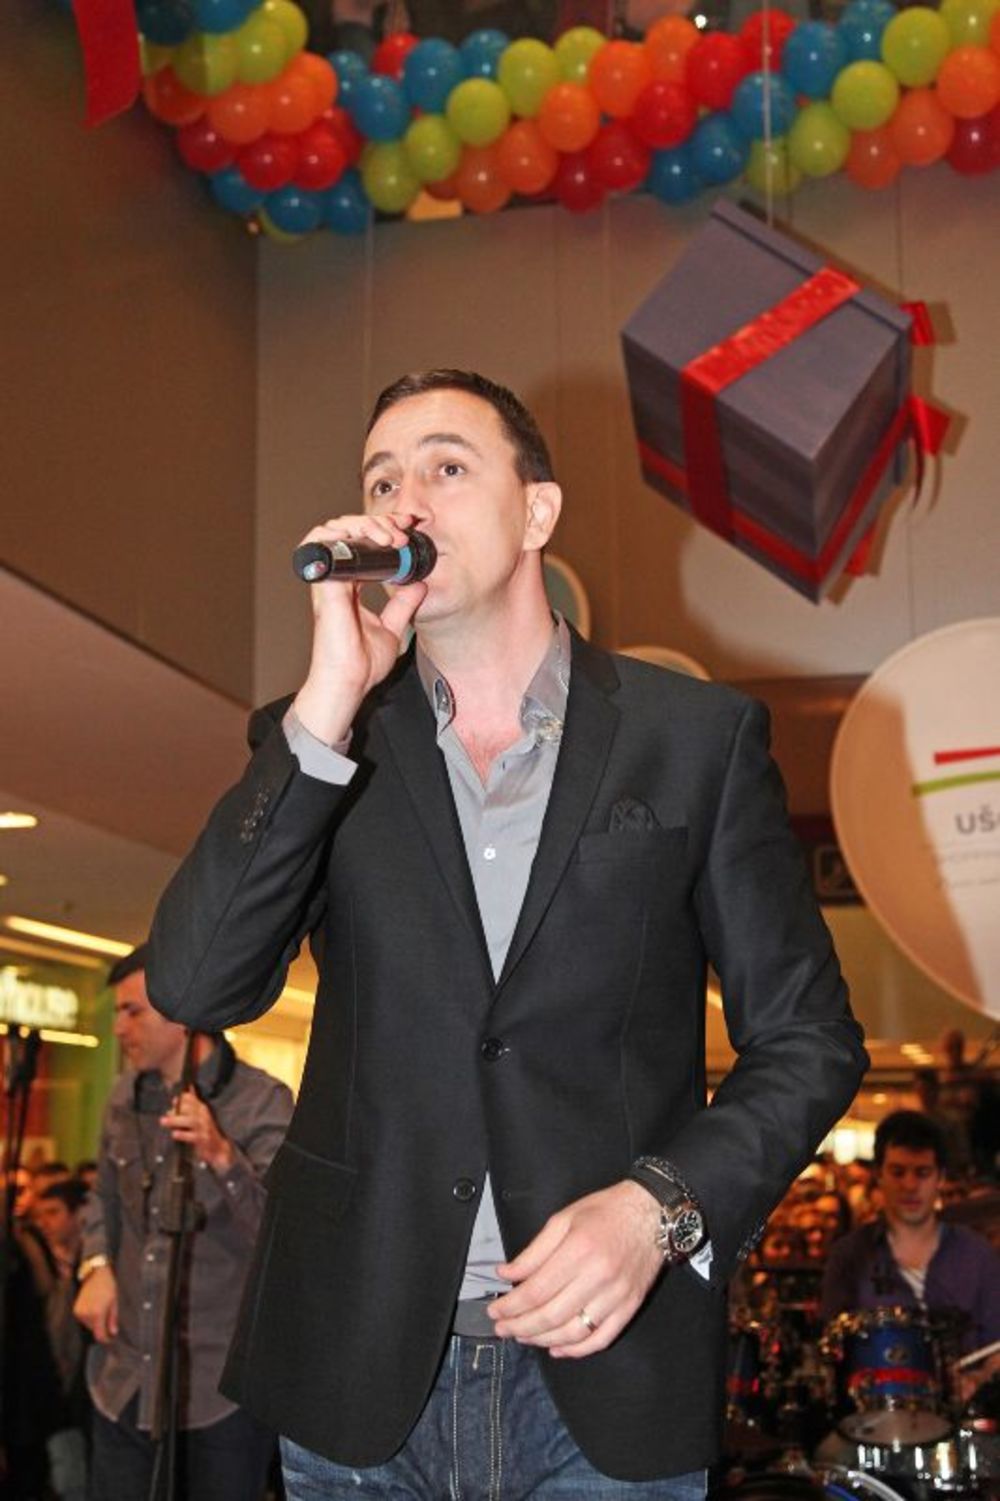 UŠĆE Shopping Center proslavio je svoj četvrti rođendan, a popularni pevač Sergej Ćetković koji je tom prilikom održao koncert, oduševio je brojne posetioce. Poznat kao miljenik mnogih dama, pevač je prisutnima priredio nesvakidašnji spektakl i pružio im pravu